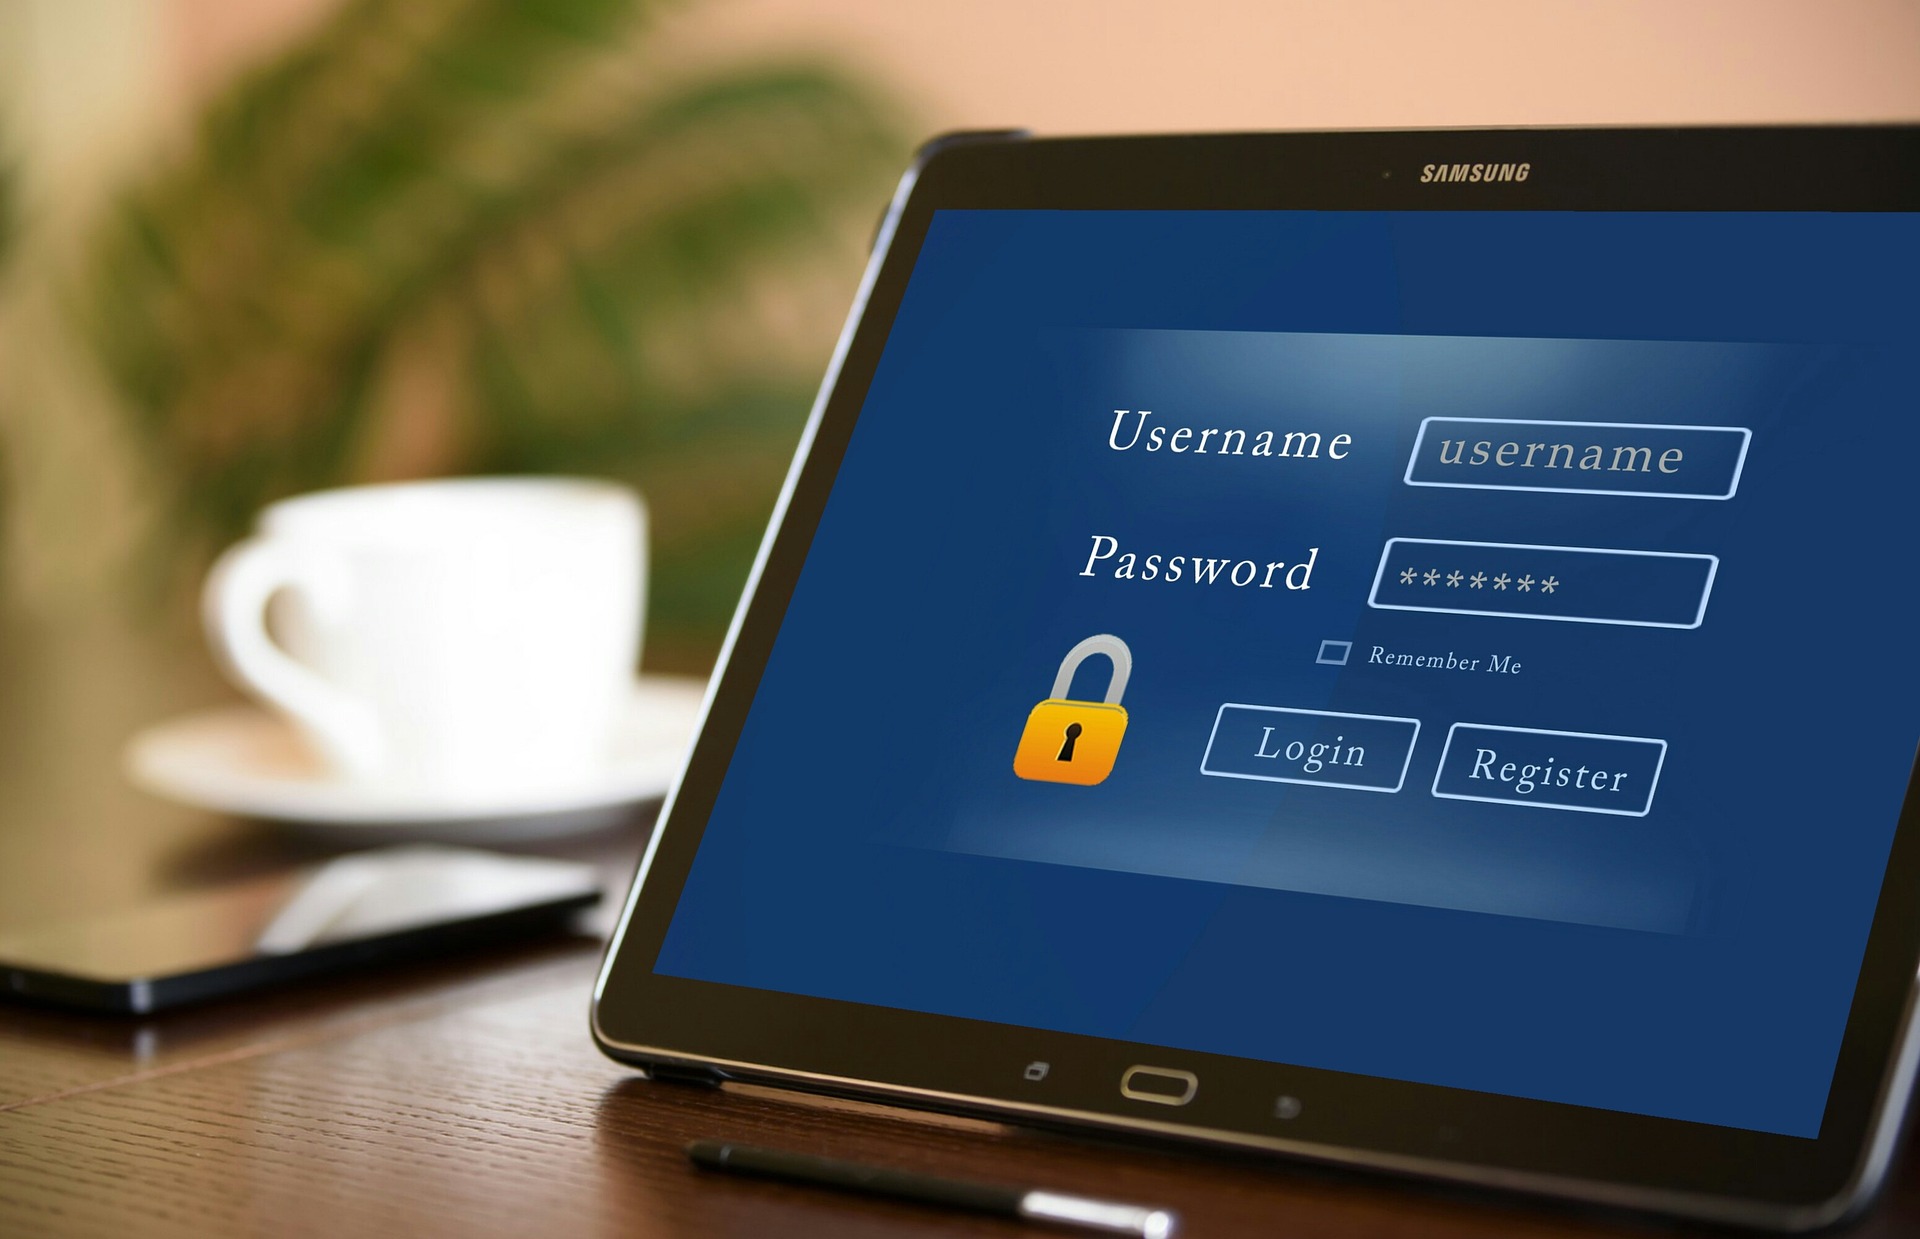 Over 40,000 Admin Portals Use 'Admin' as Password